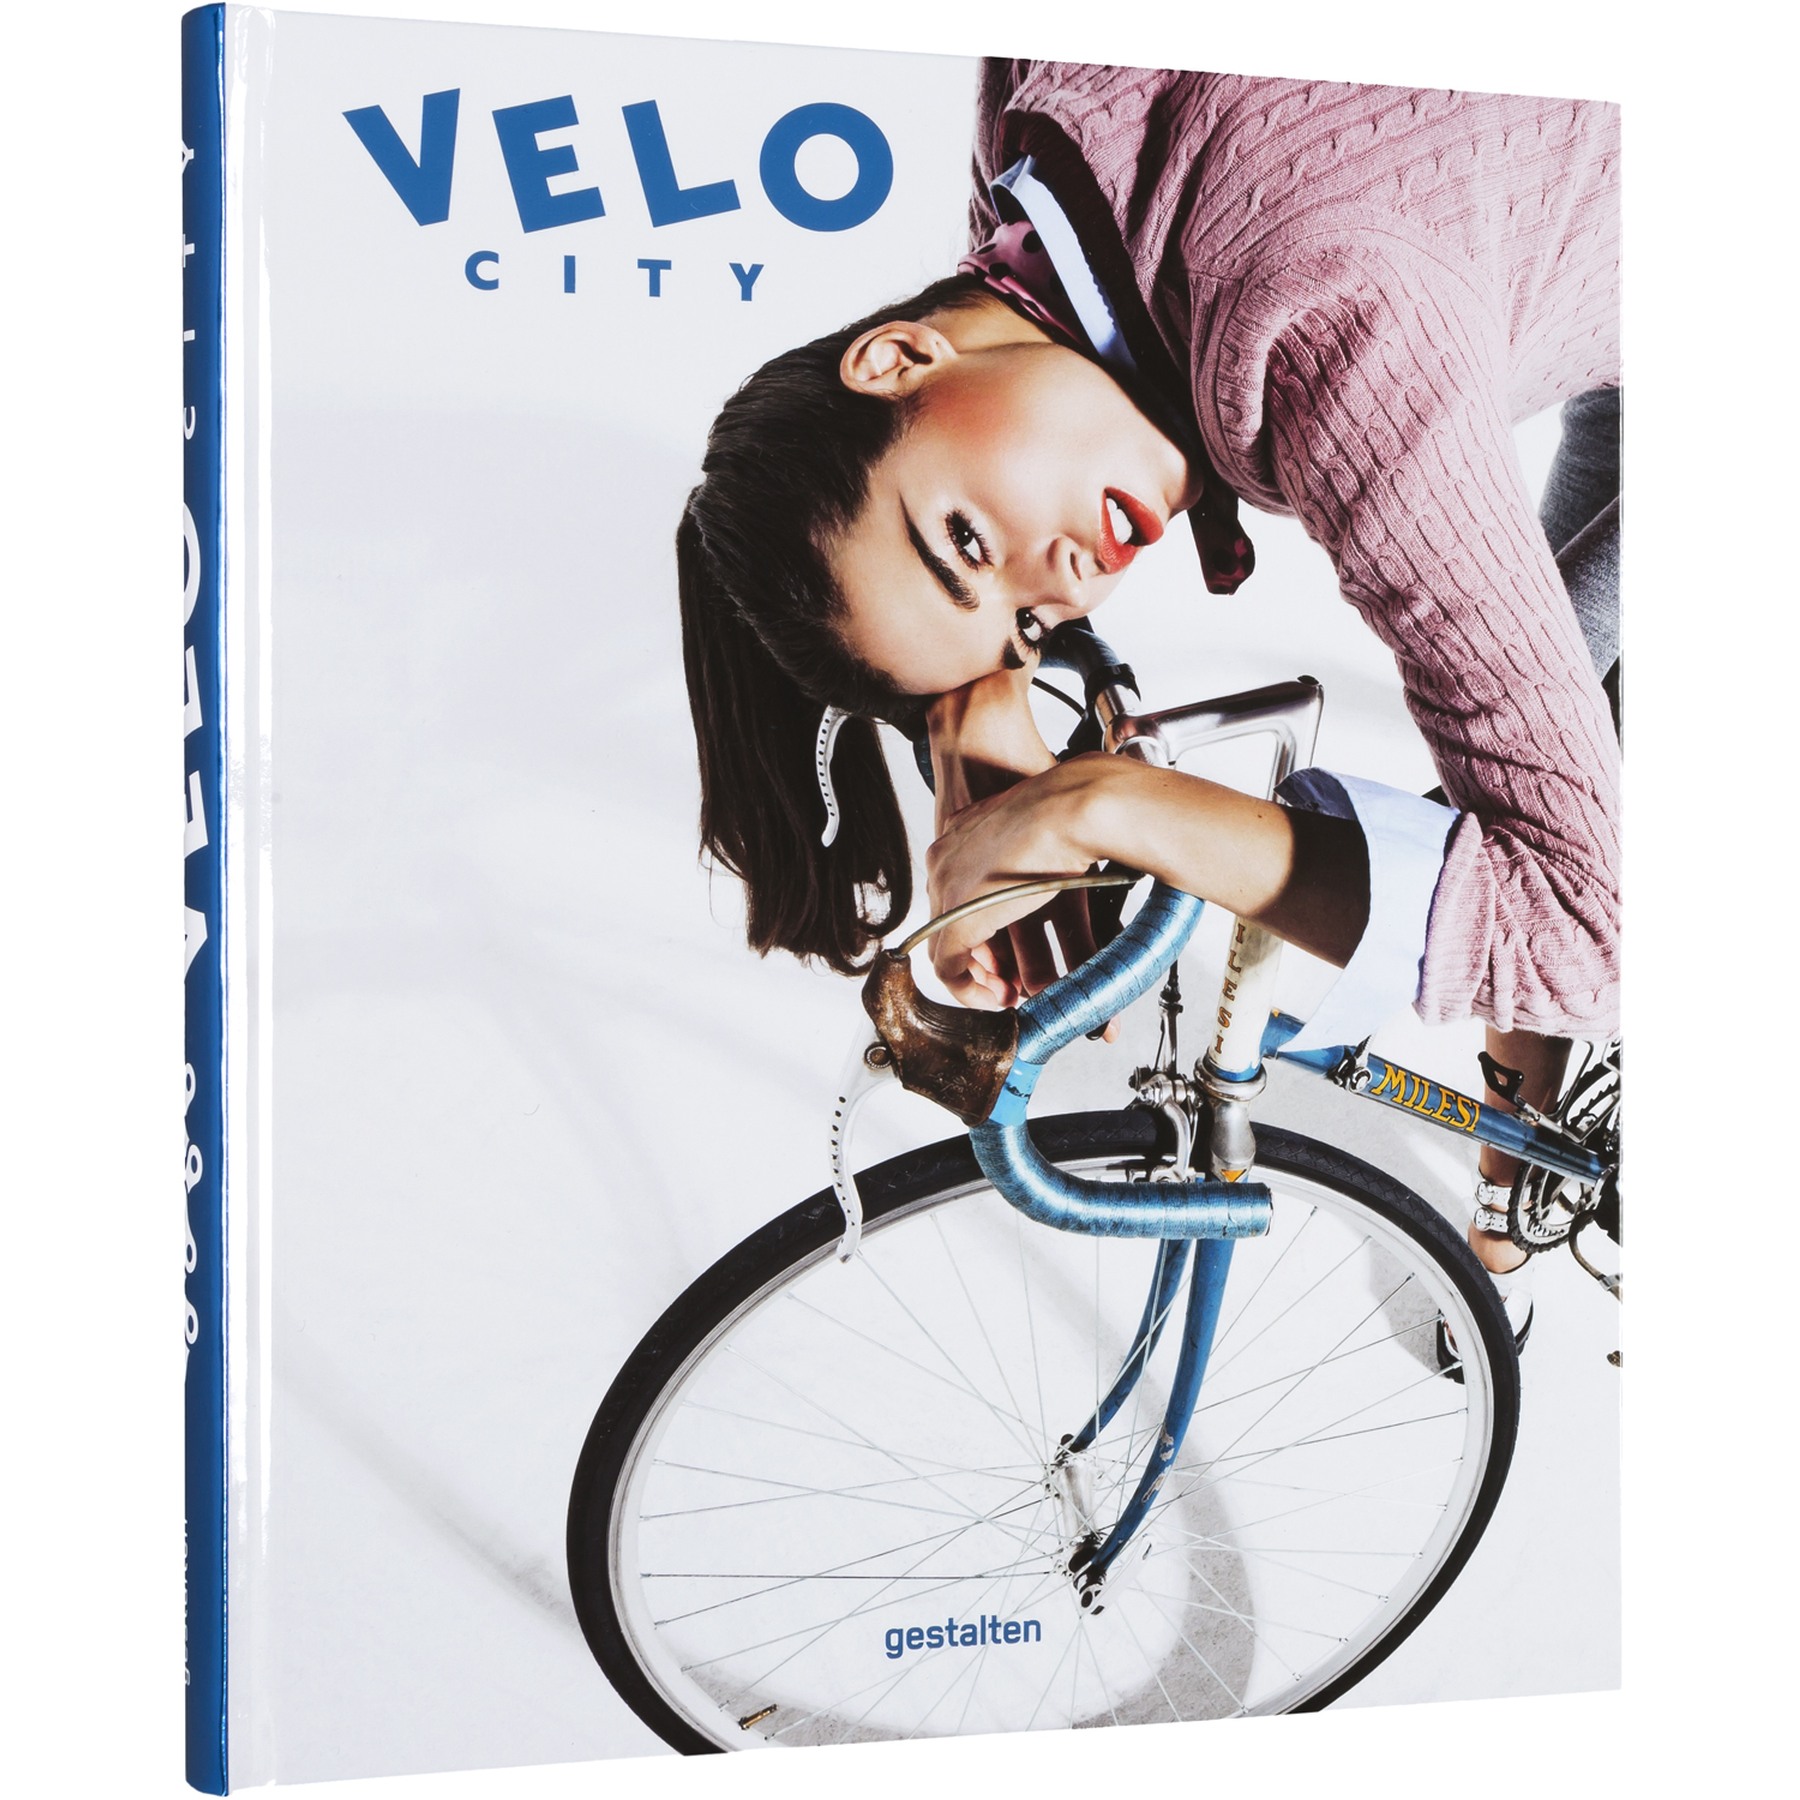 Bild von gestalten VELO City - Englisch - Bicycle Culture and City Life